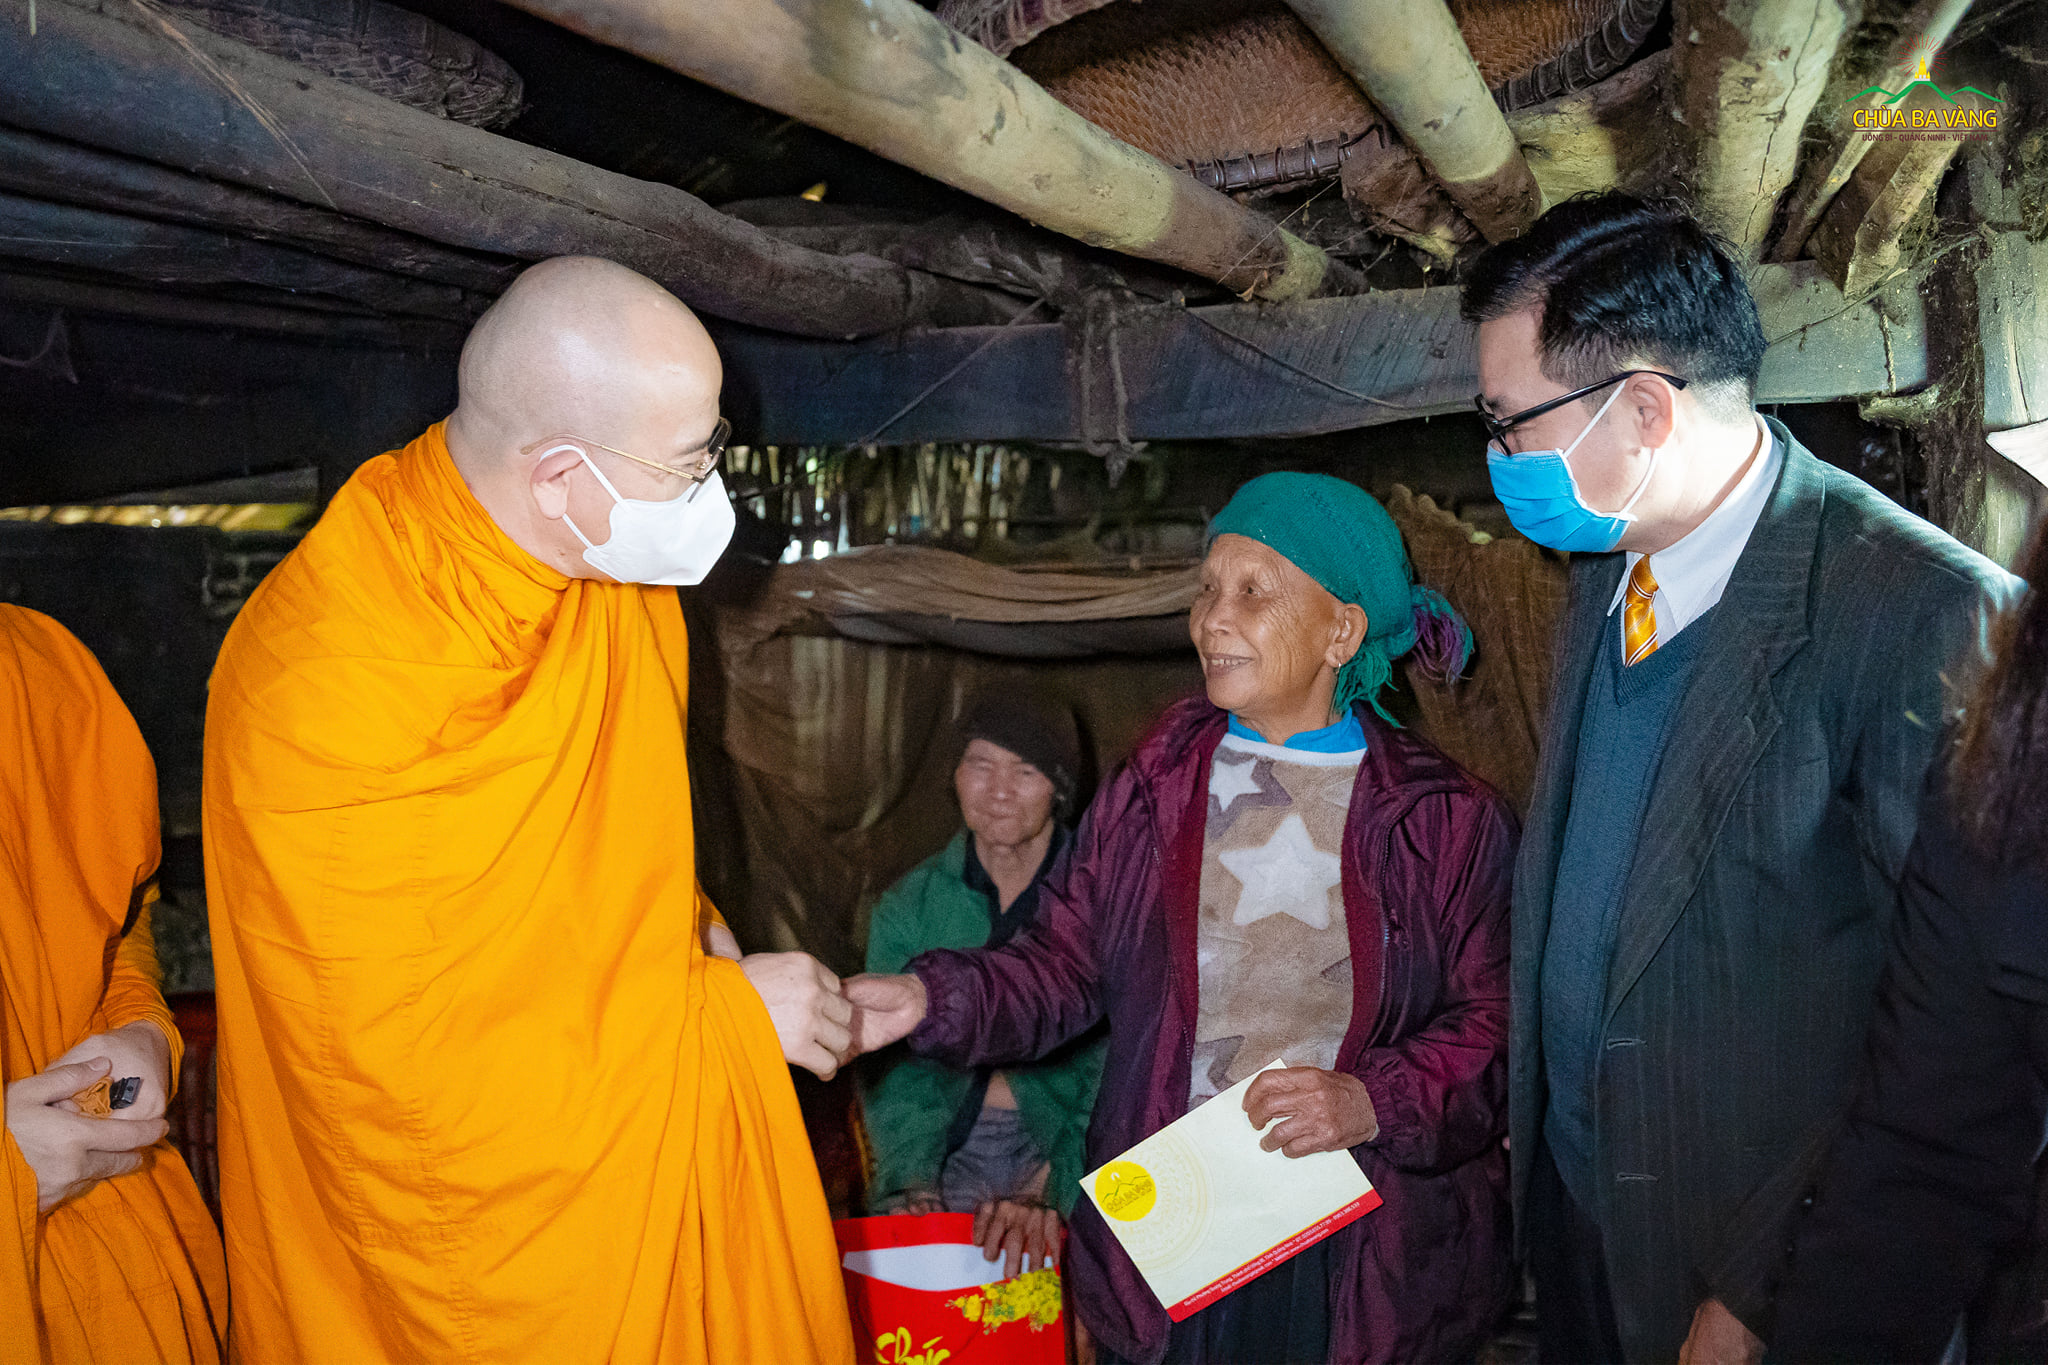 Niềm hạnh phúc hiện trên khuôn mặt của người dân huyện Bình Liêu khi được đón tiếp đoàn từ thiện đến thăm